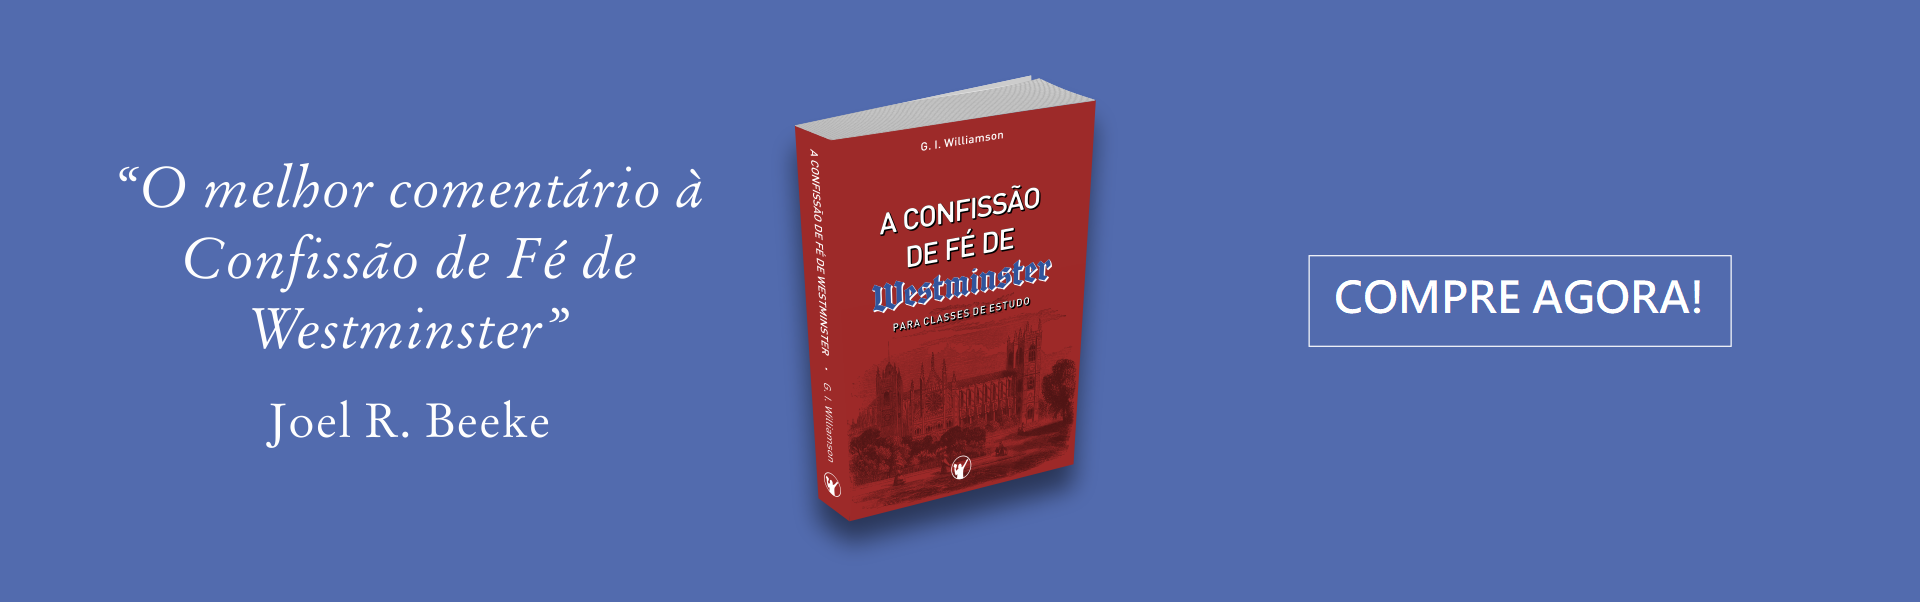 A Confissão de Fé de Westminster Williamson